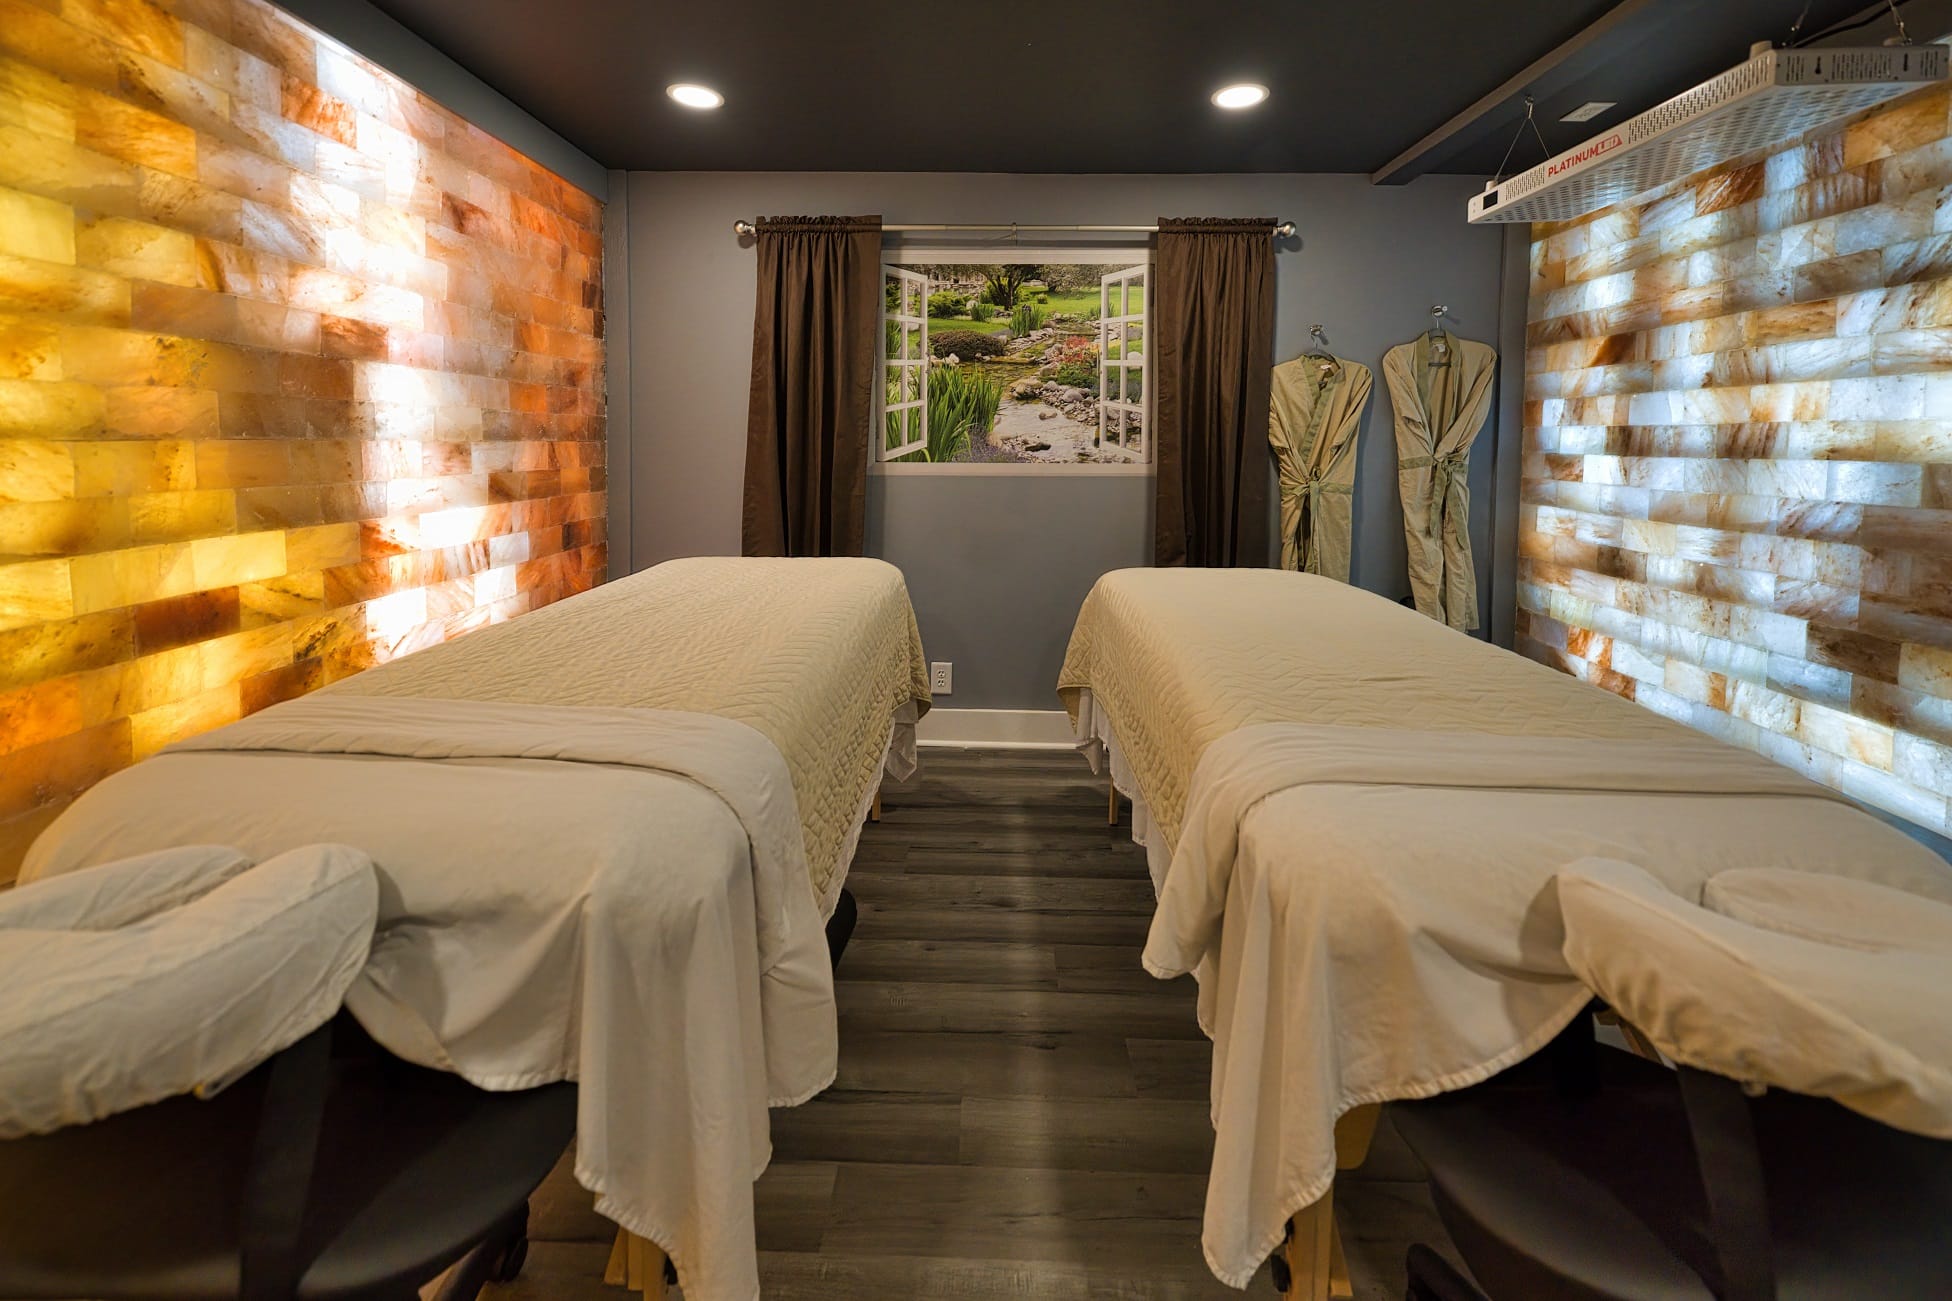 Massage Winston Salem Massage Therapy Qi Massage And Natural Healing Spa